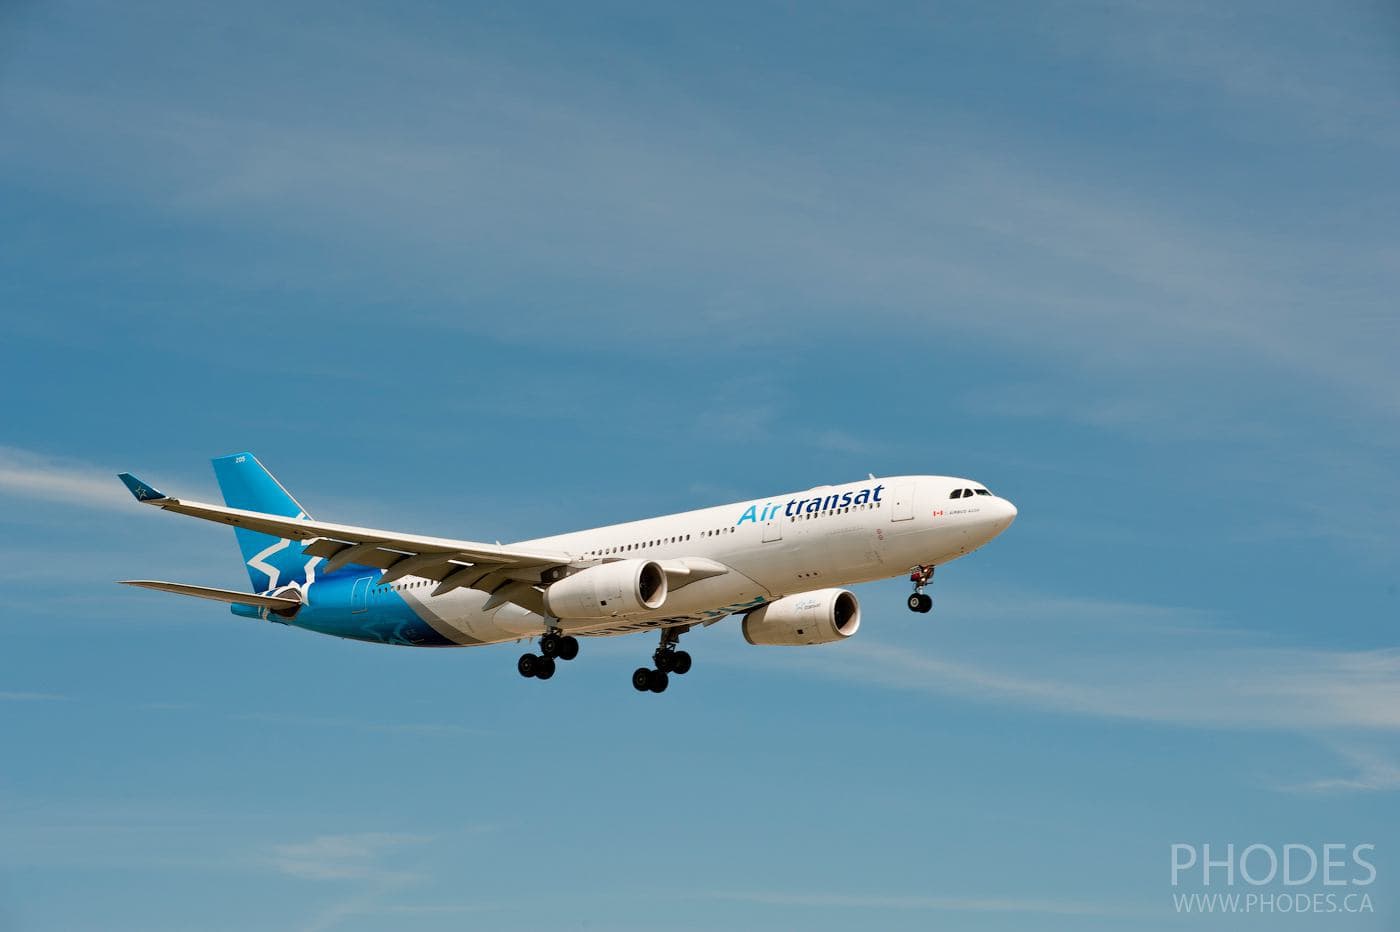 Avion Air Transat dans le ciel avant l’atterrissage - Aéroport Montréal Trudeau